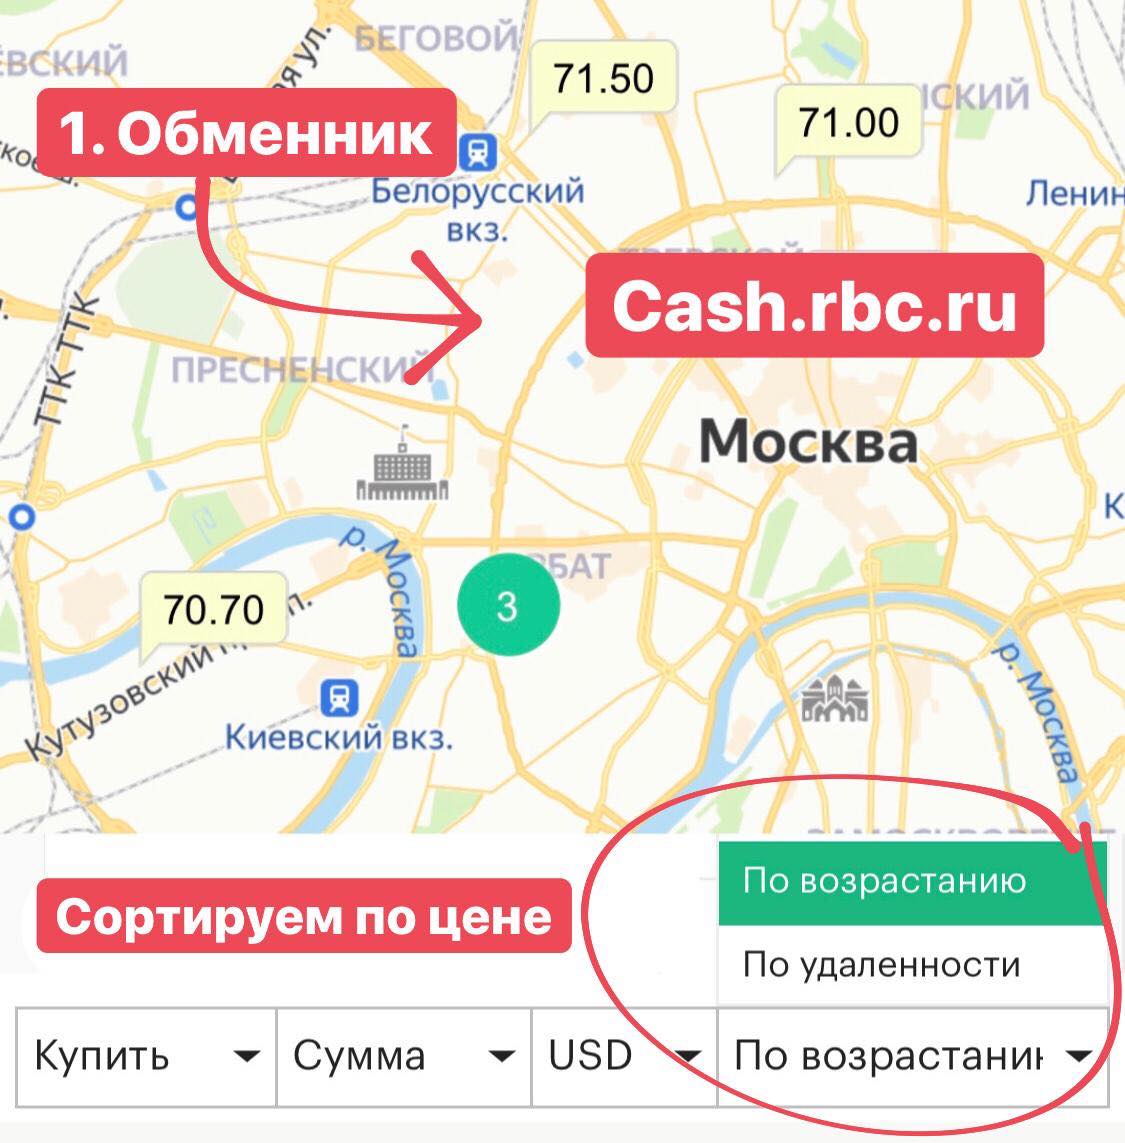 Курсы обмена валют на карте. Обменник карта. Обменники в Москве на карте. Обмен валют с карты. Обменник валют рядом со мной на карте.